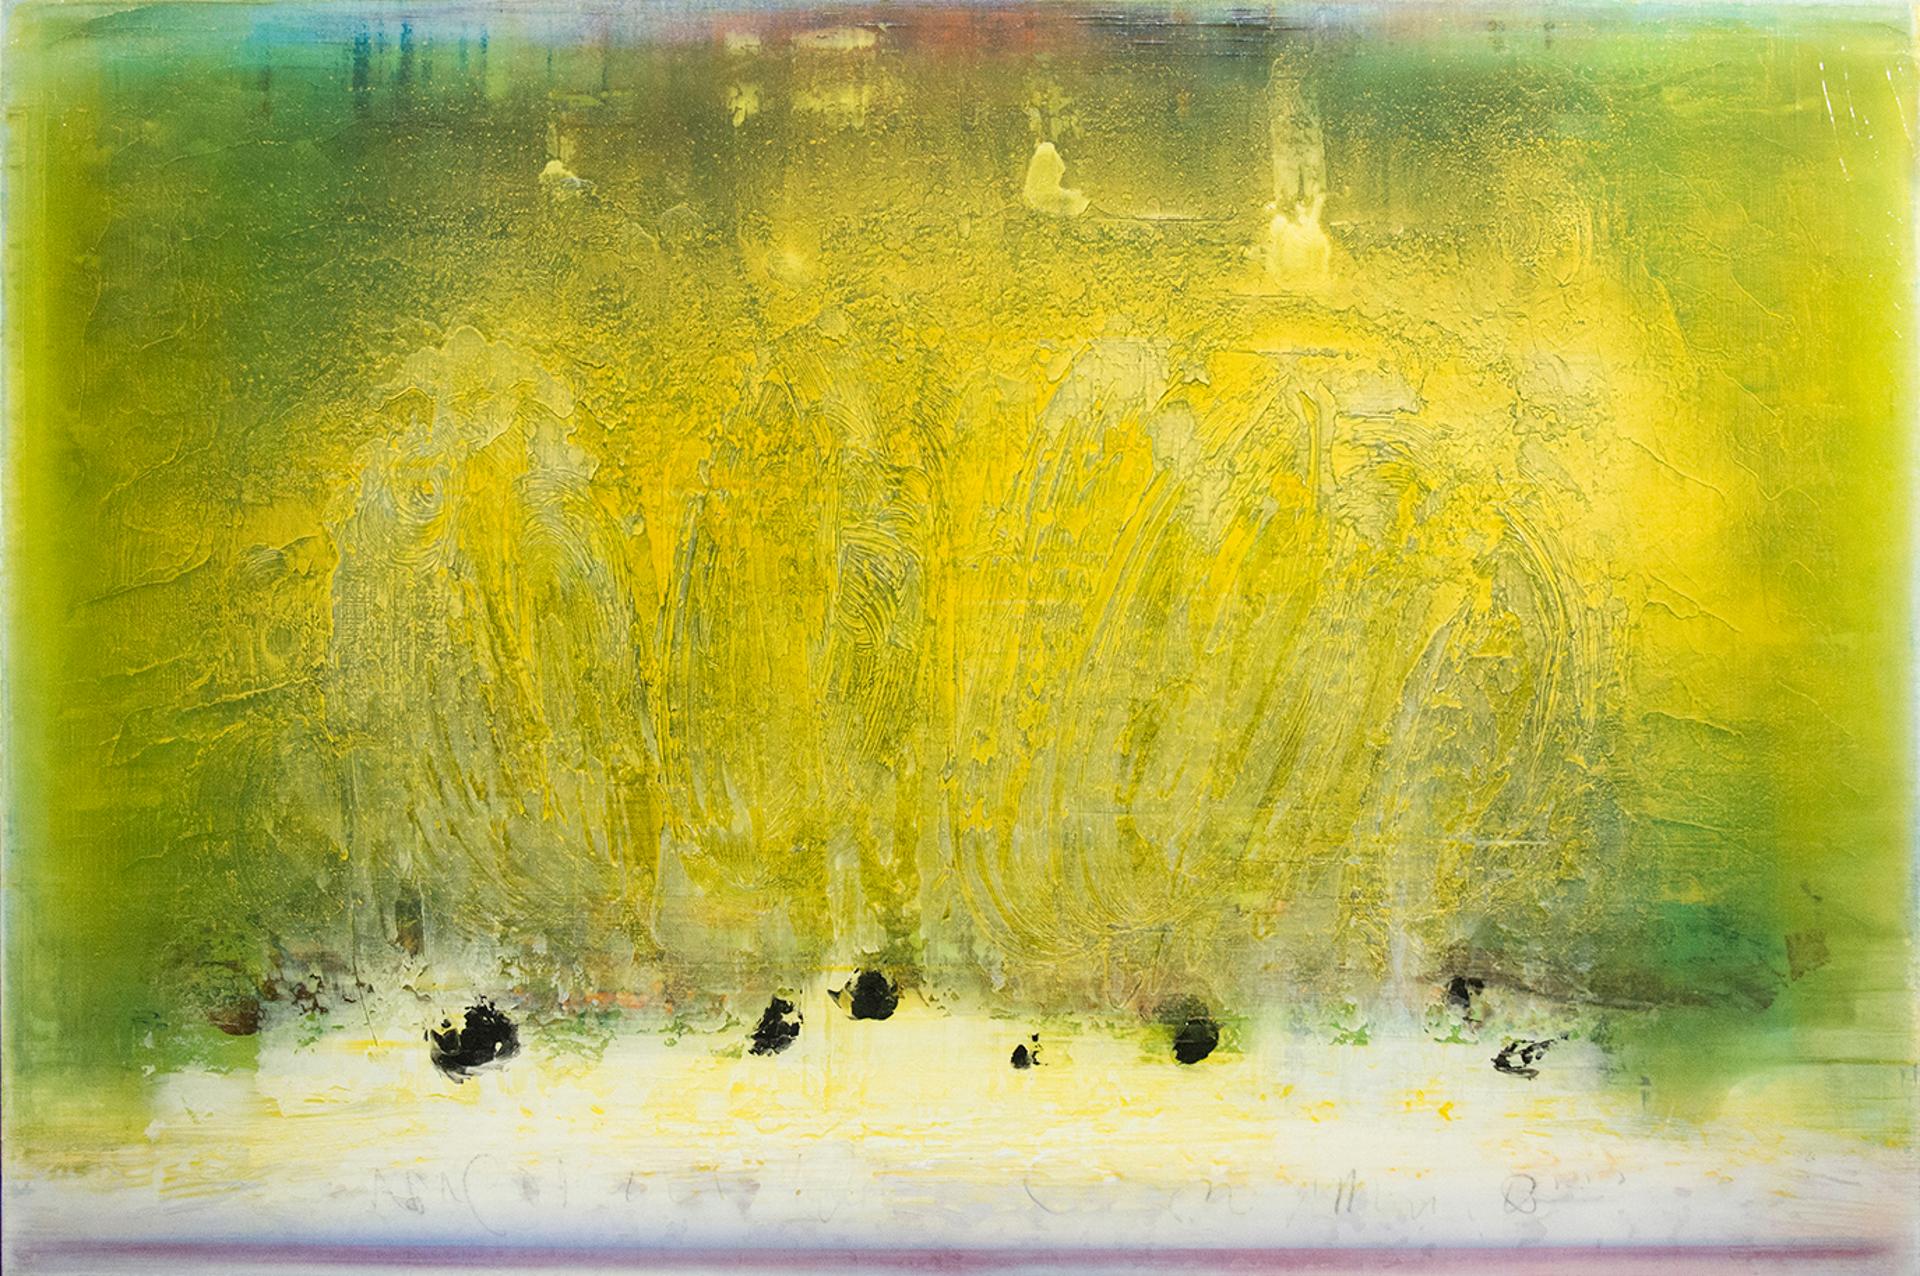 Alice Teichert (1959) - Summer Works, 2012